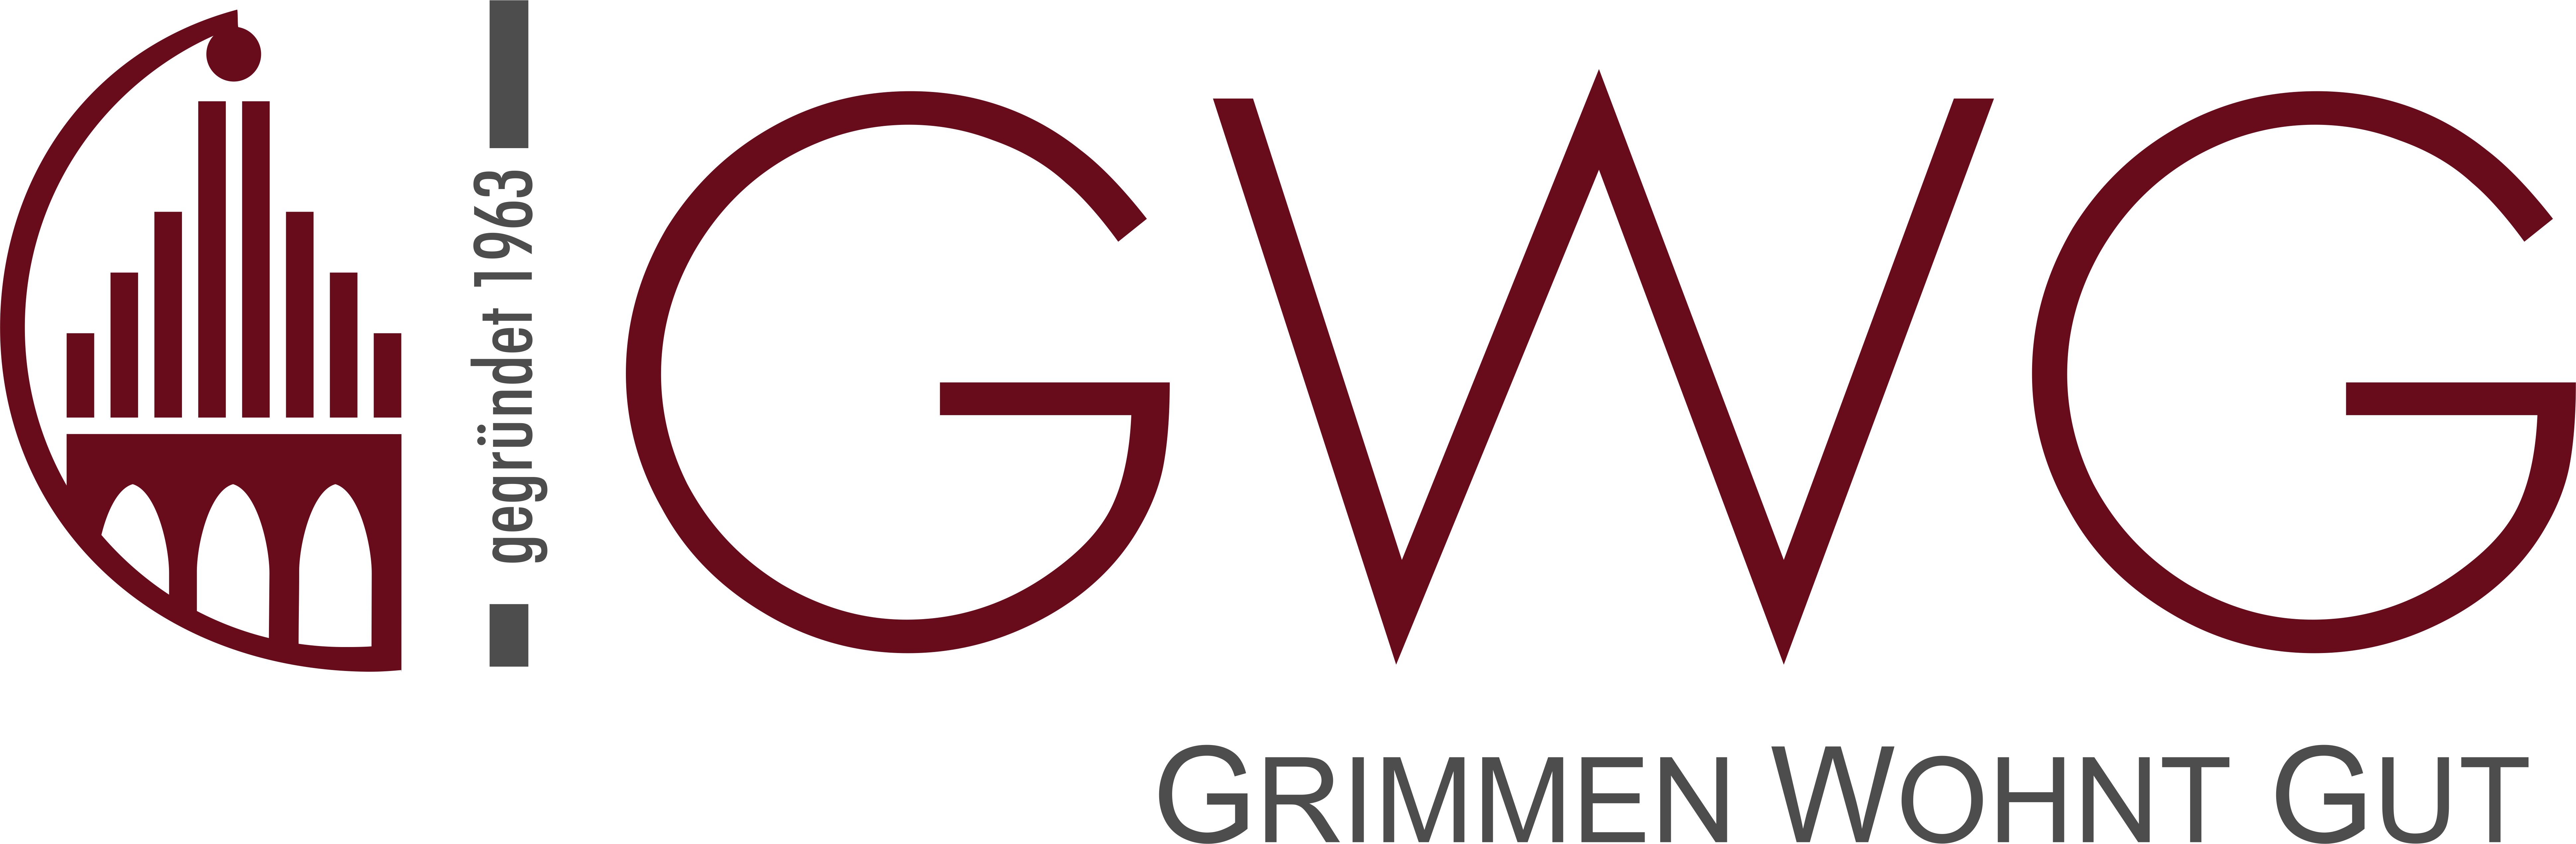 Wohnungsbaugesellschaft GWG, GWG mbH Grimmen